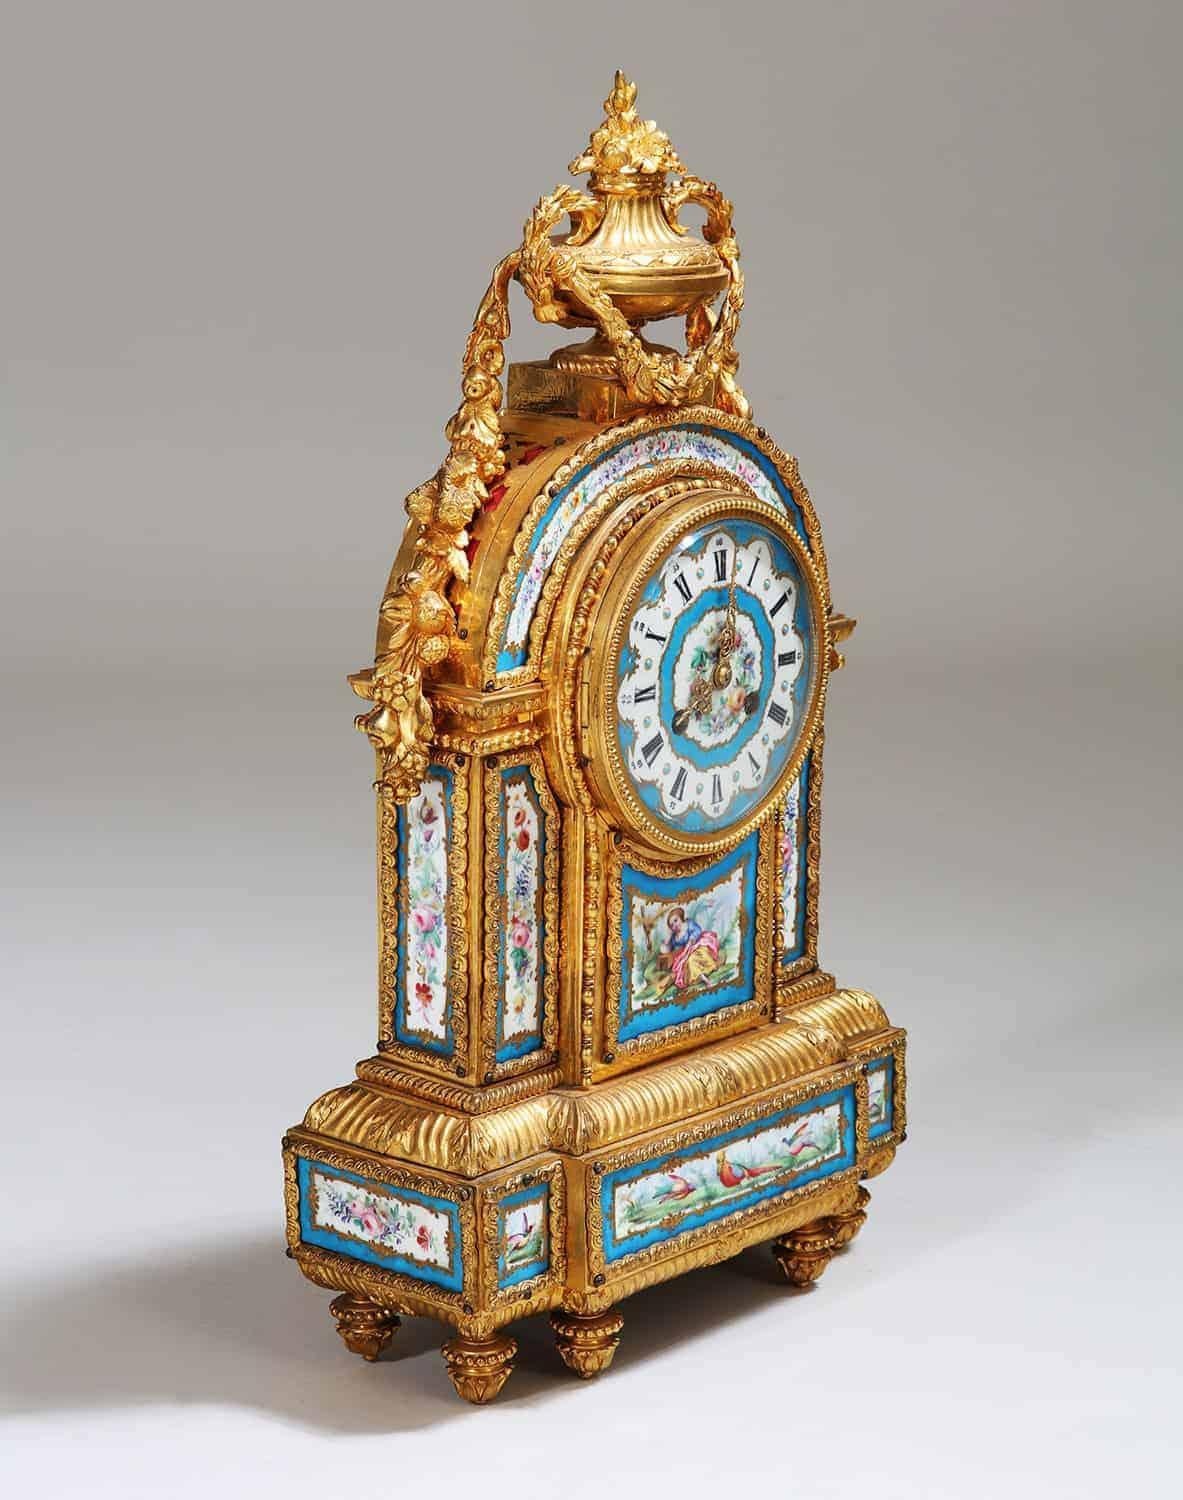 Eine seltene und sehr feine 19. Jahrhundert Napoleonischen Ära Sevres Porzellan Kaminsims Uhr, die reich ziseliert Ormolu vergoldete Bronze Körper mit 11 Platten aus Porzellan mit floralen Szenen, Vögel und Figuren in blauen Celeste Grenzen und das